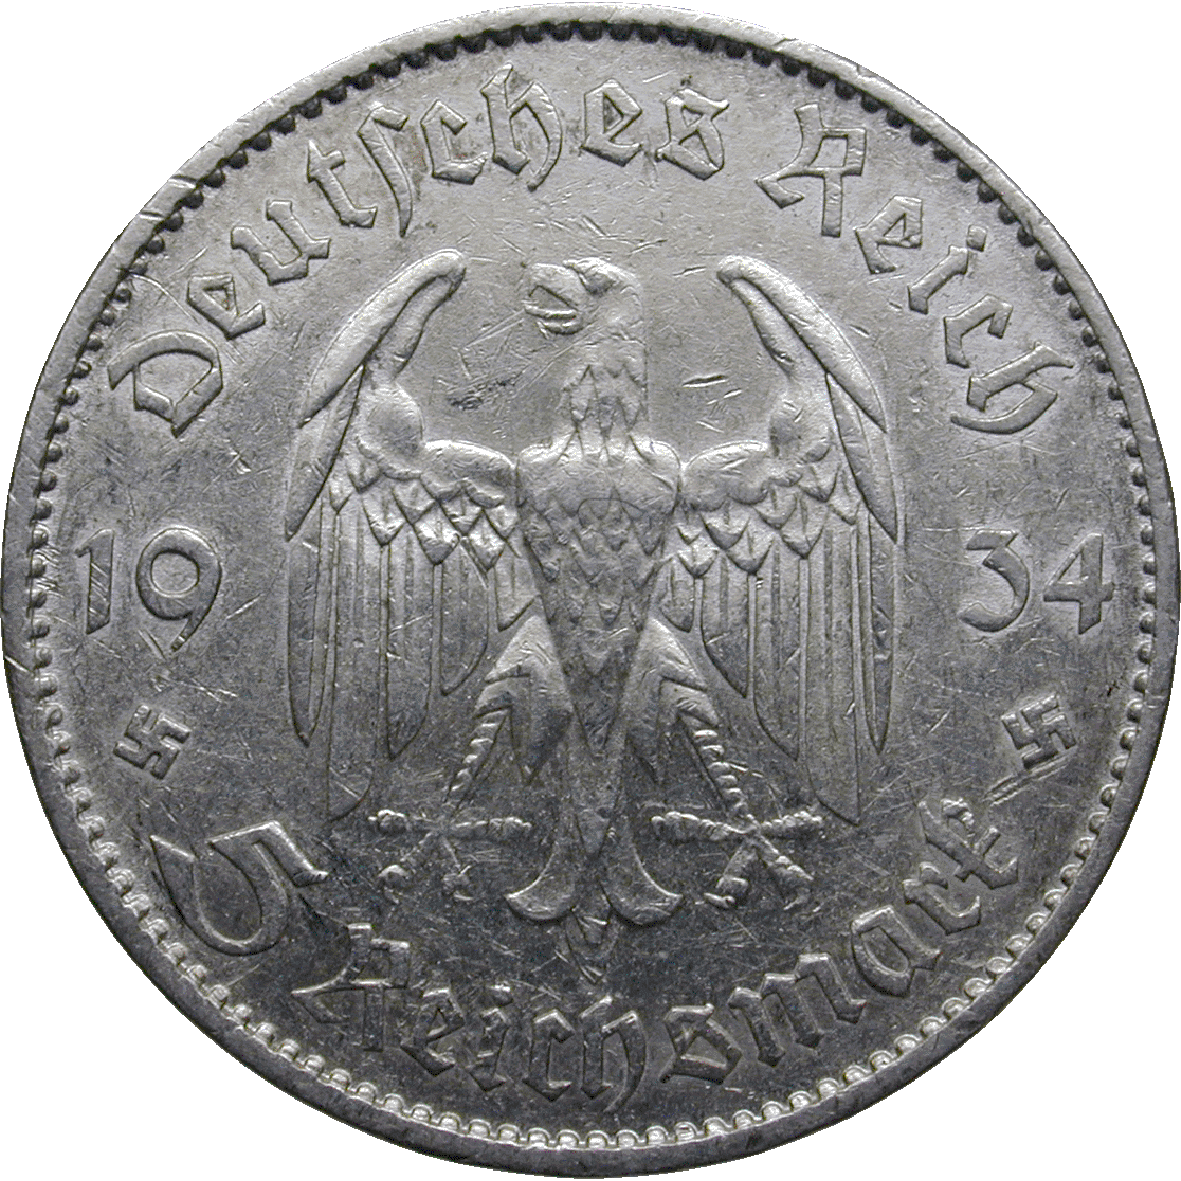 Deutsches Drittes Reich, 5 Reichsmark 1934 (obverse)